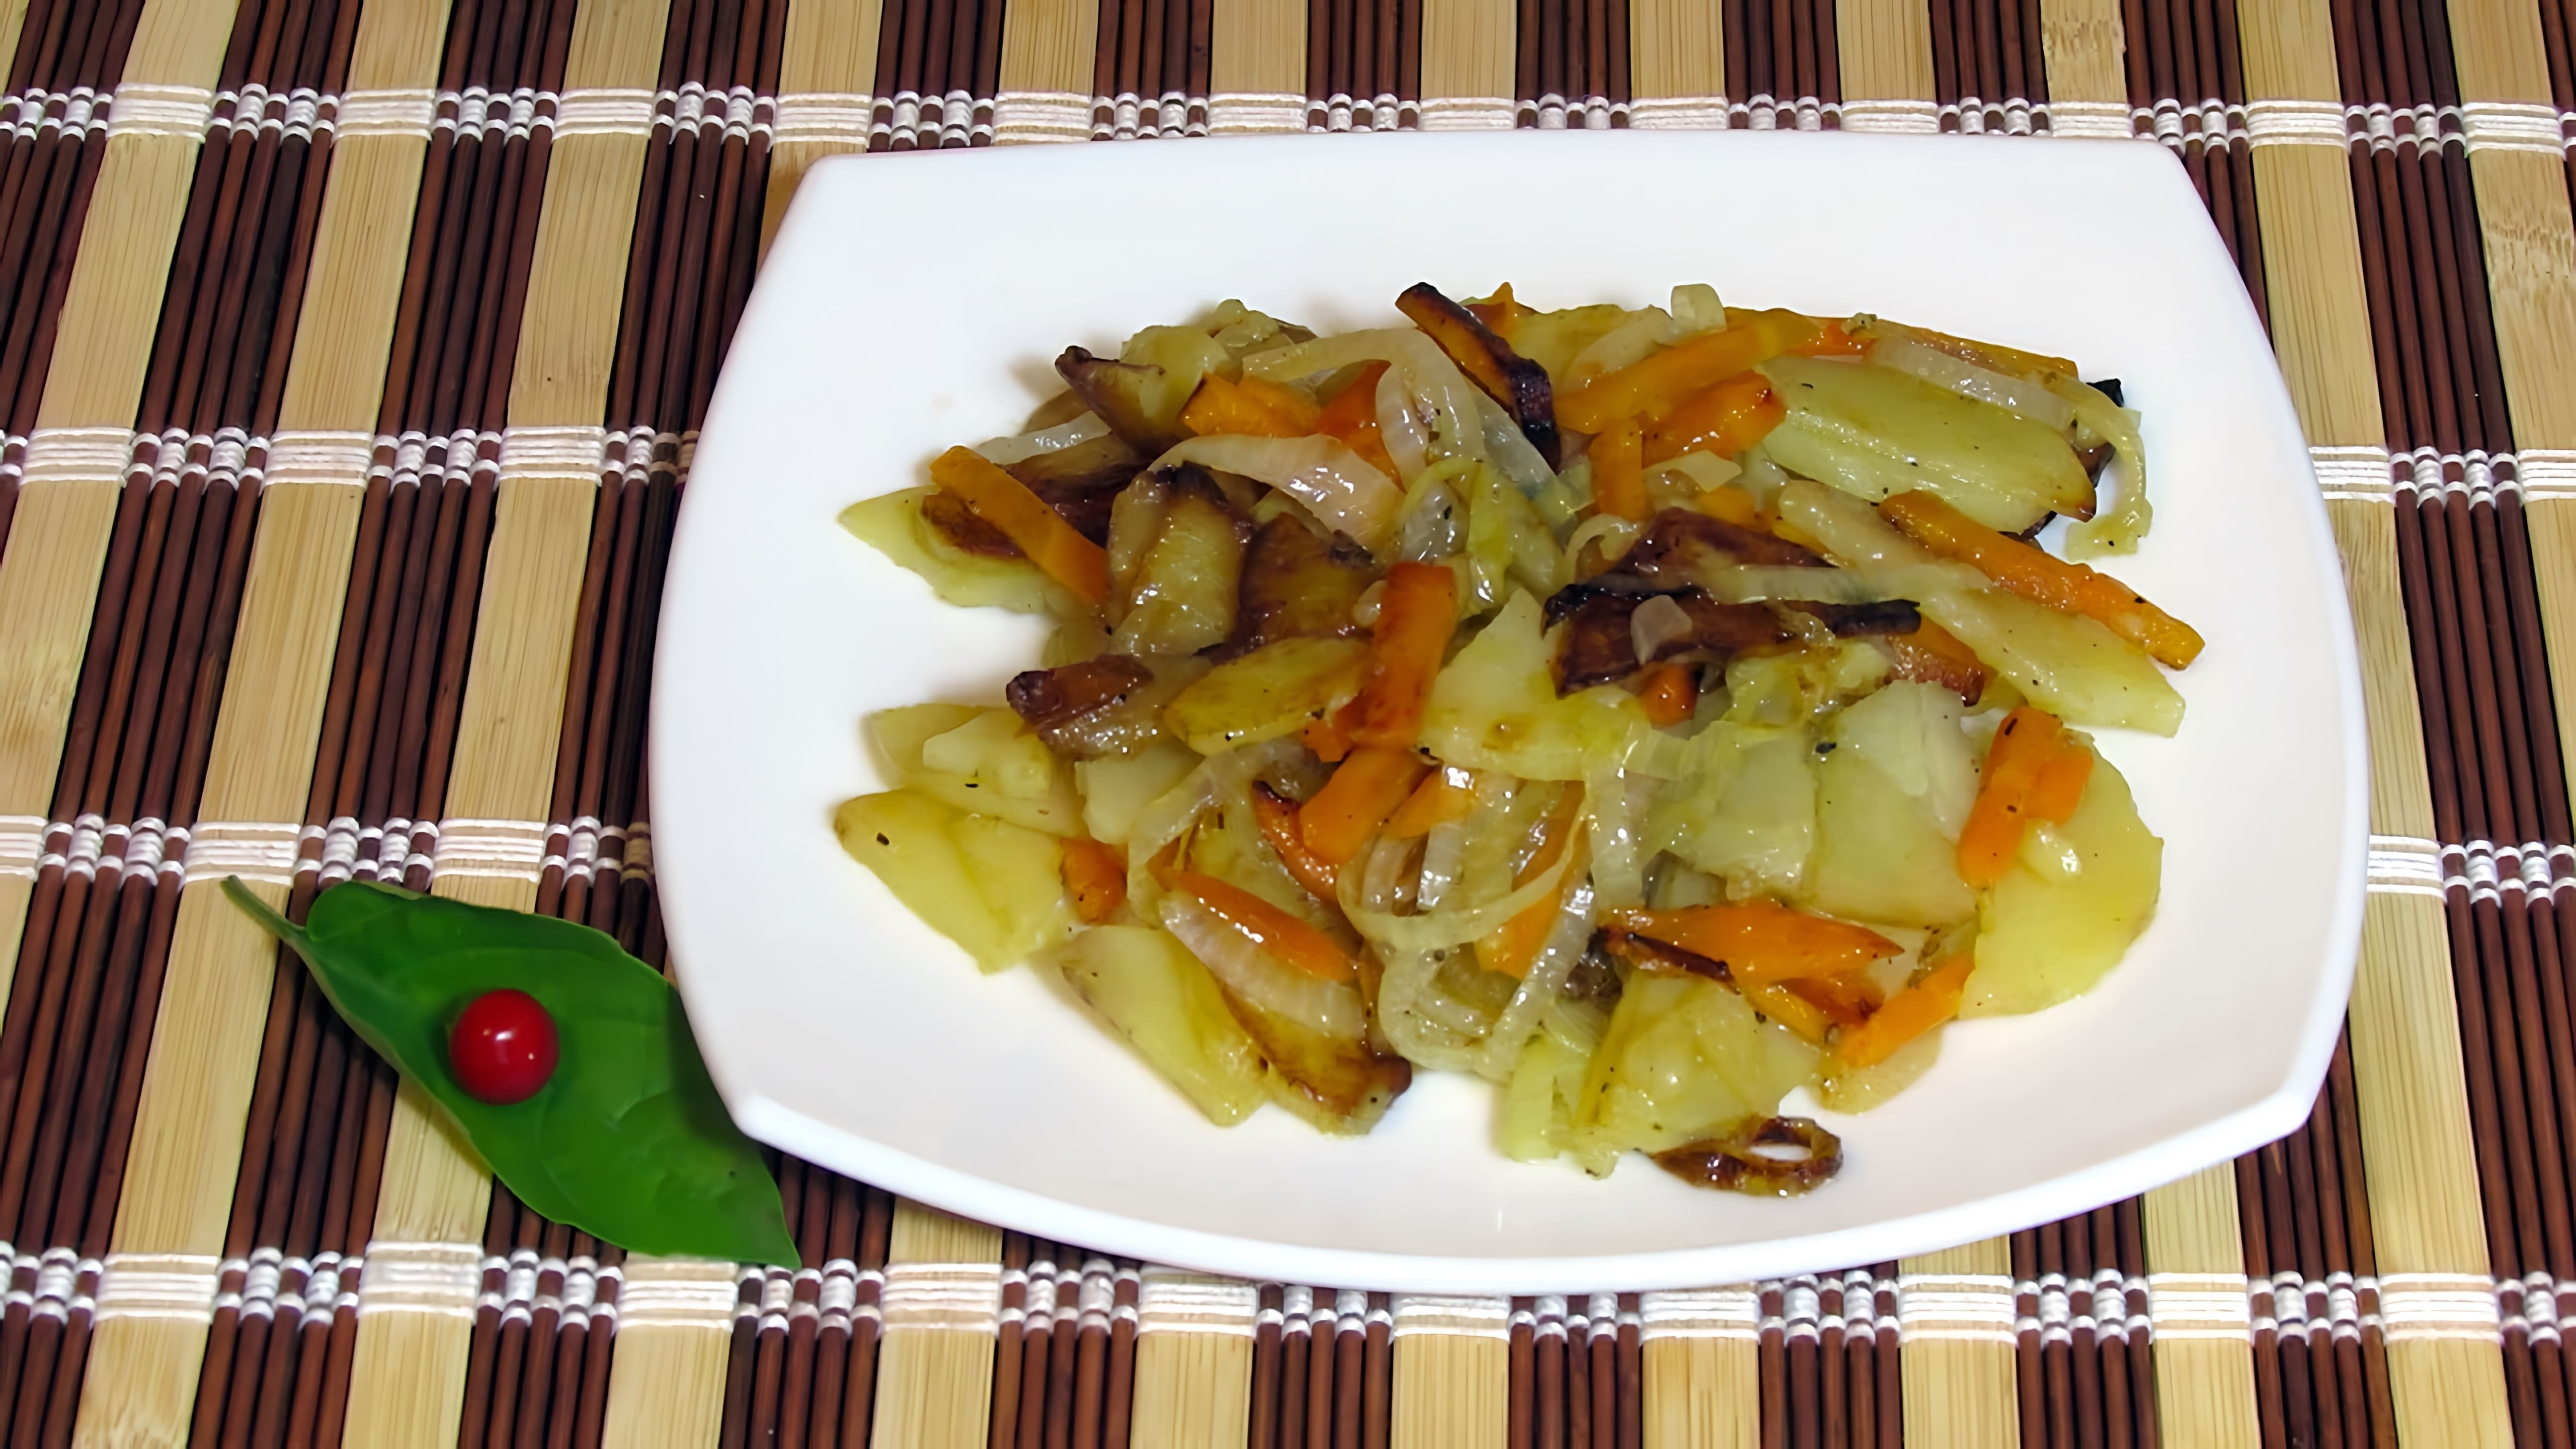 Жареная картошка с морковью - это вкусное и простое блюдо, которое можно приготовить в домашних условиях